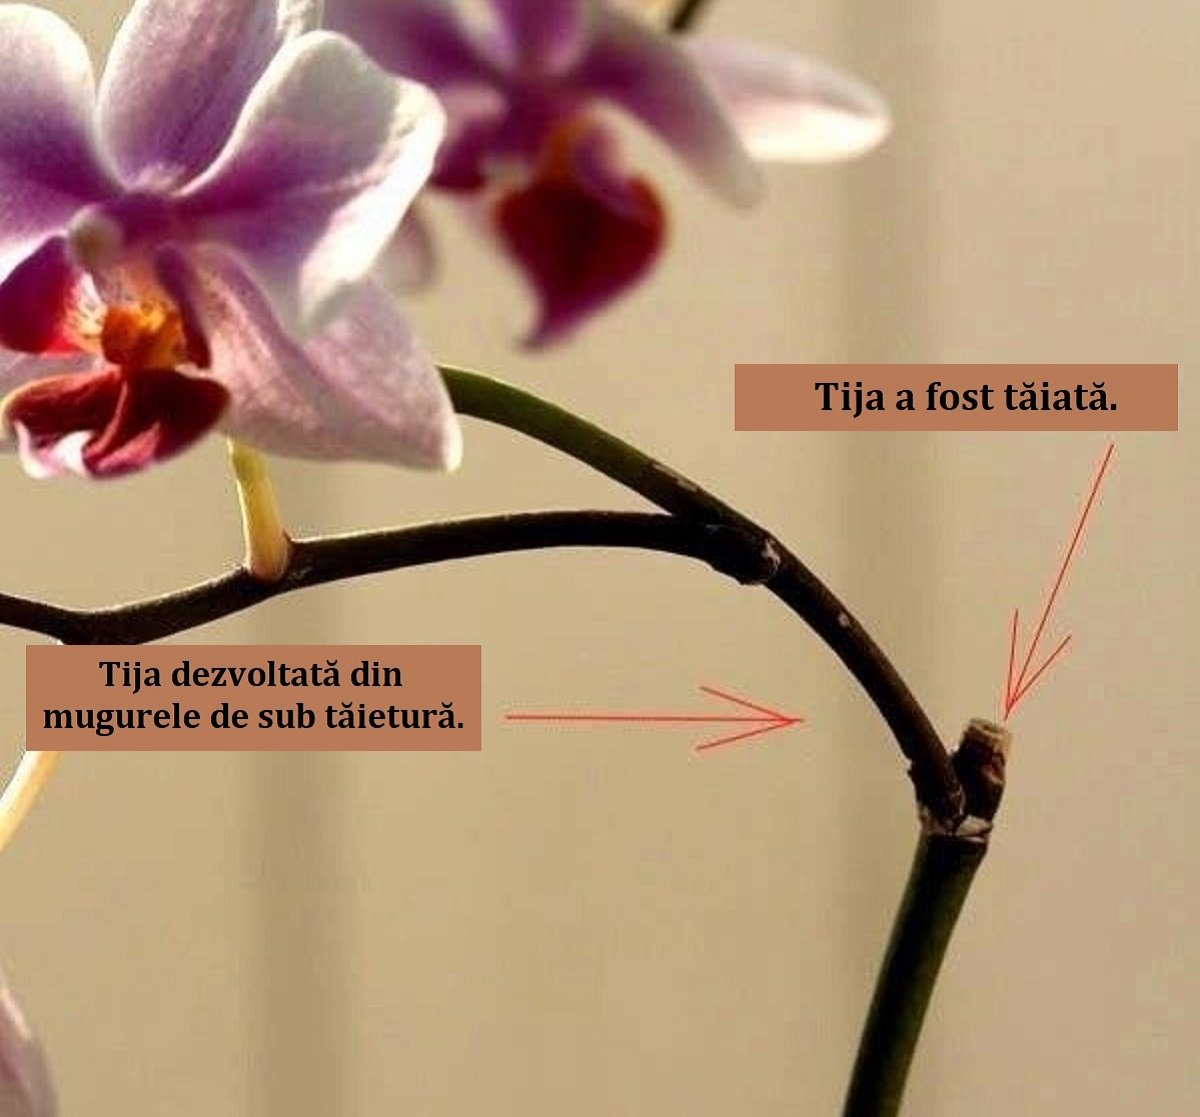 Орхидея после цветения уход в домашних условиях